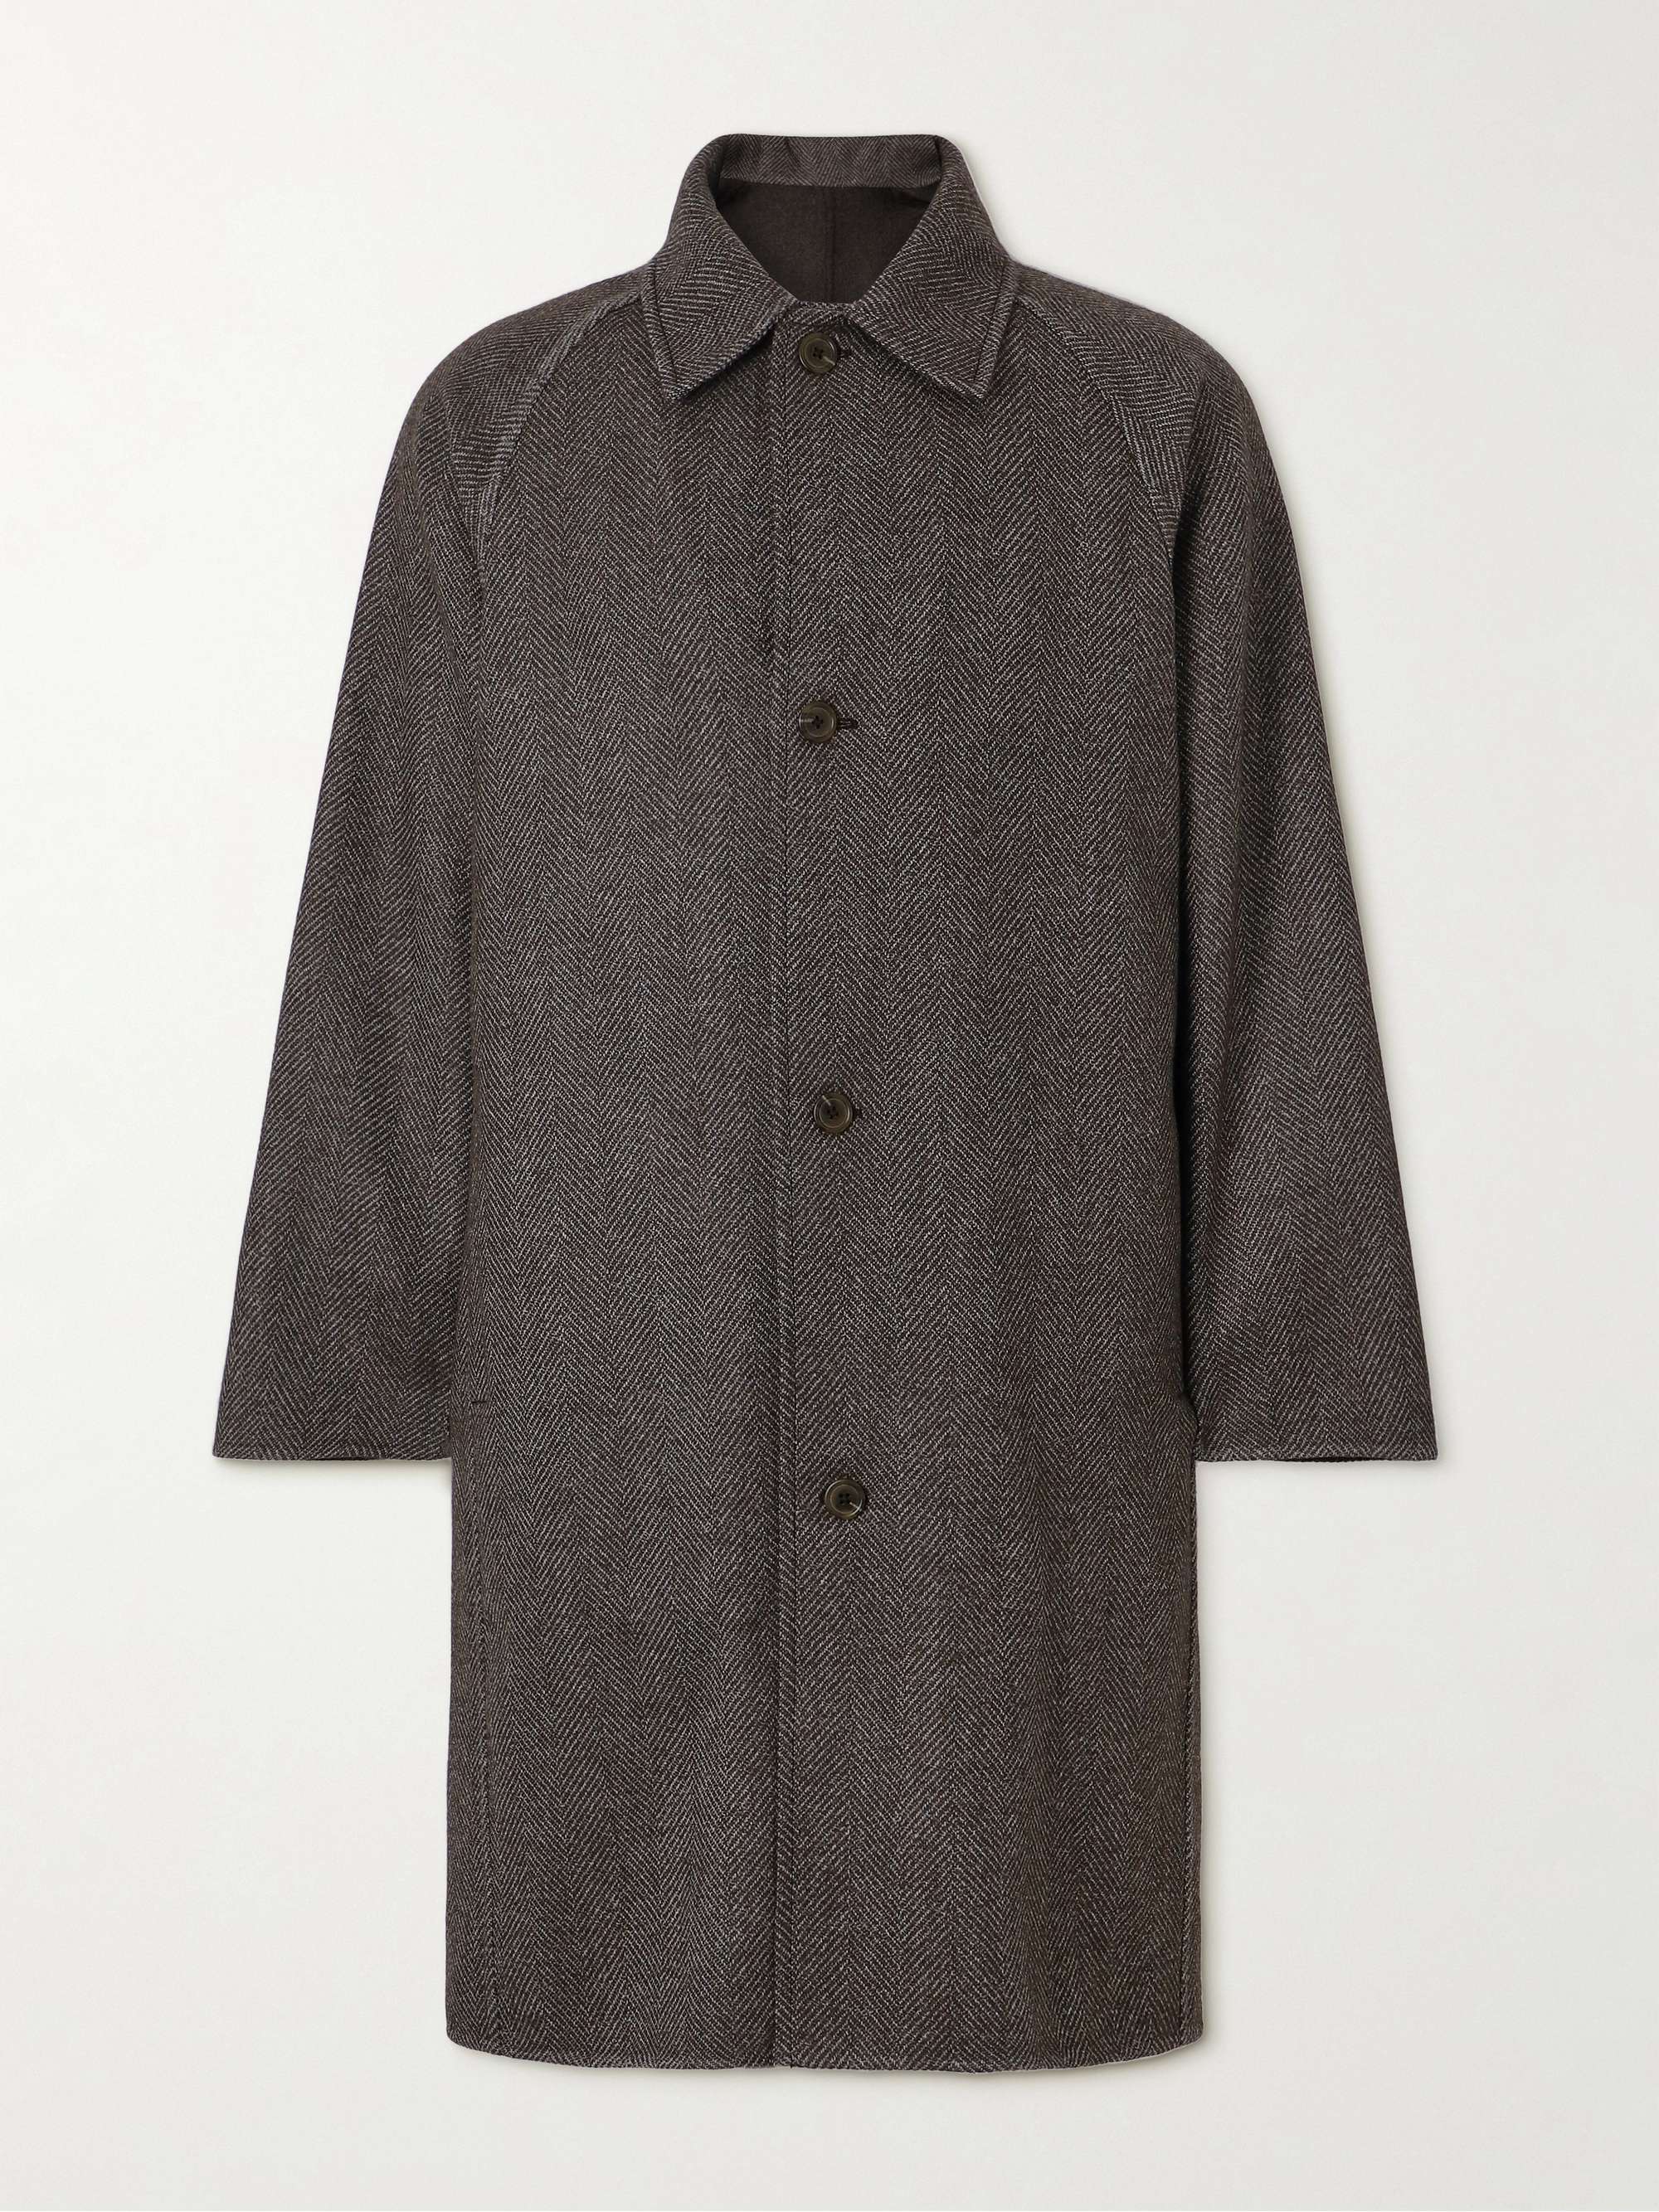 STÒFFA Herringbone Wool Coat